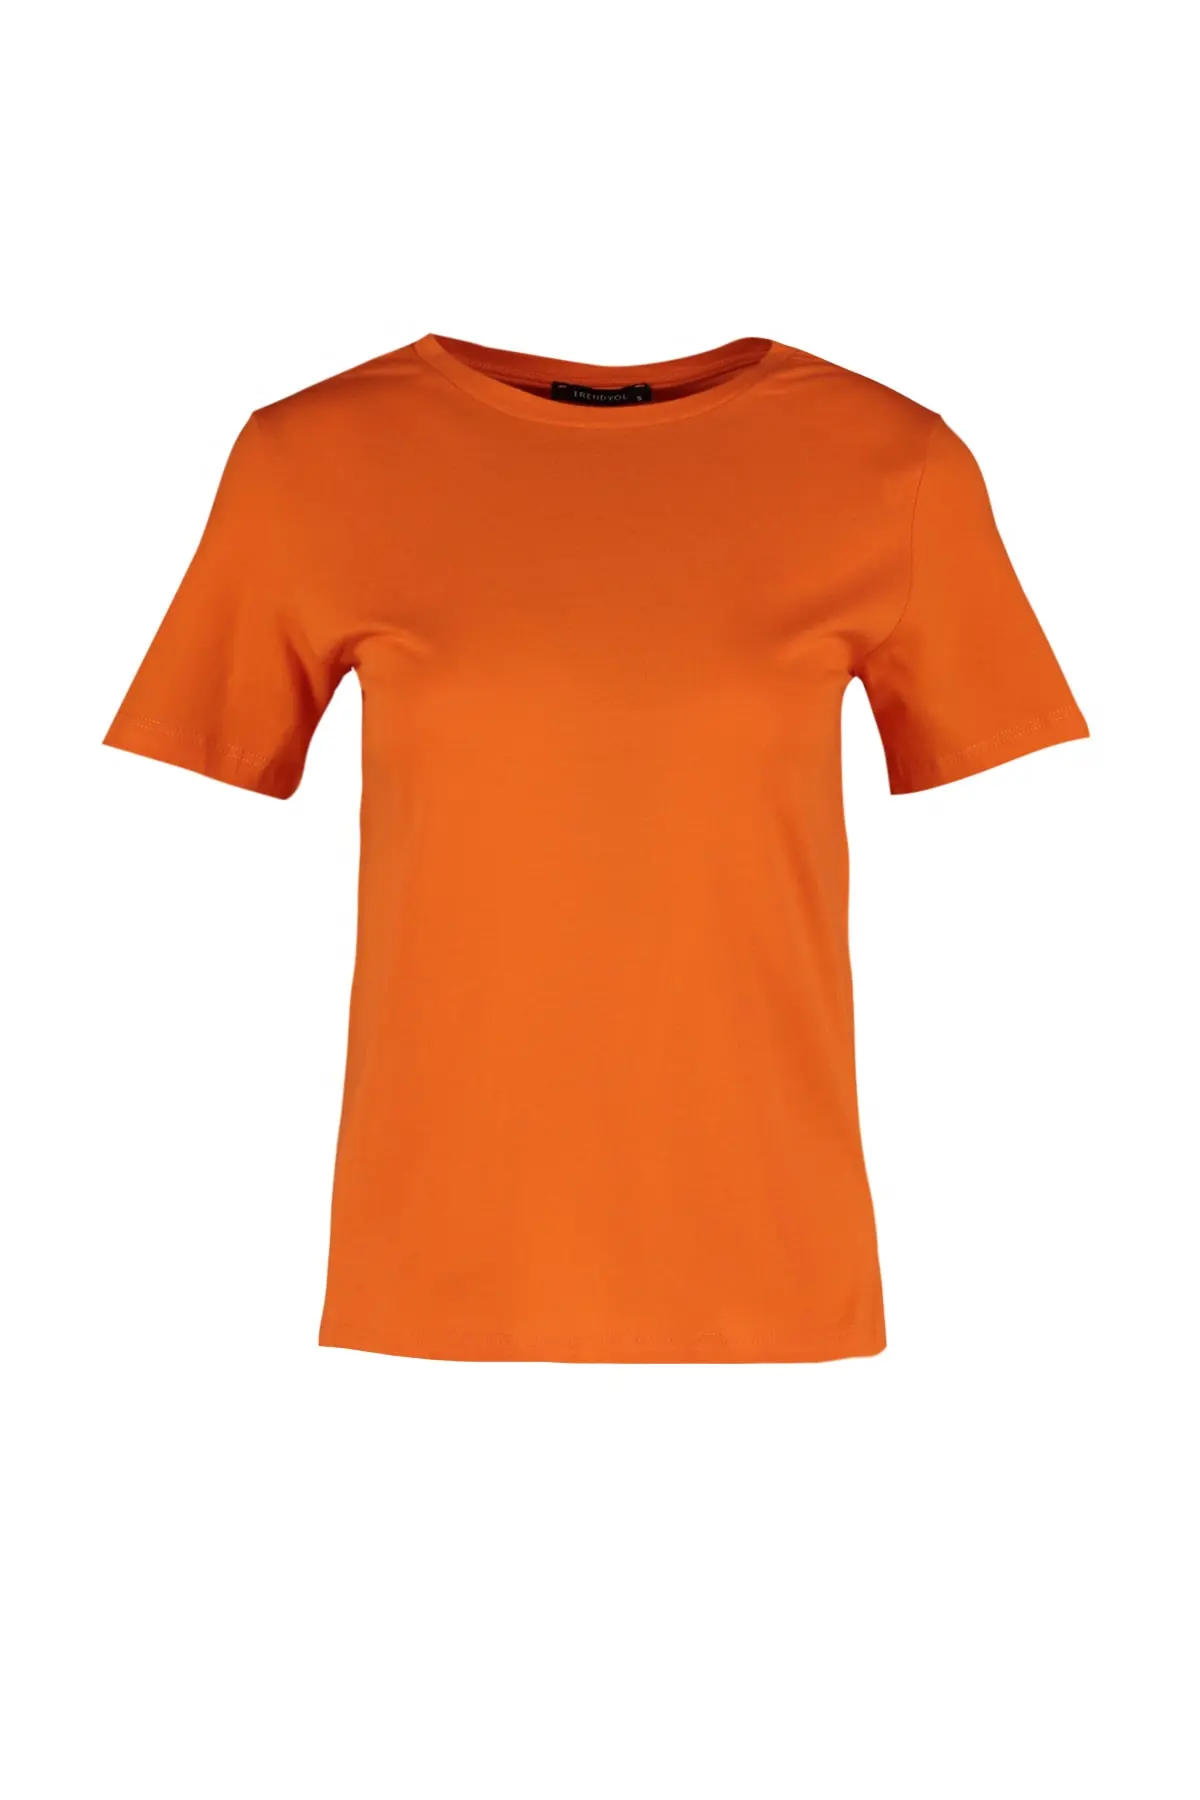 تیشرت پنبه ای ساده زنانه نارنجی برند TRENDYOLMİLLA 